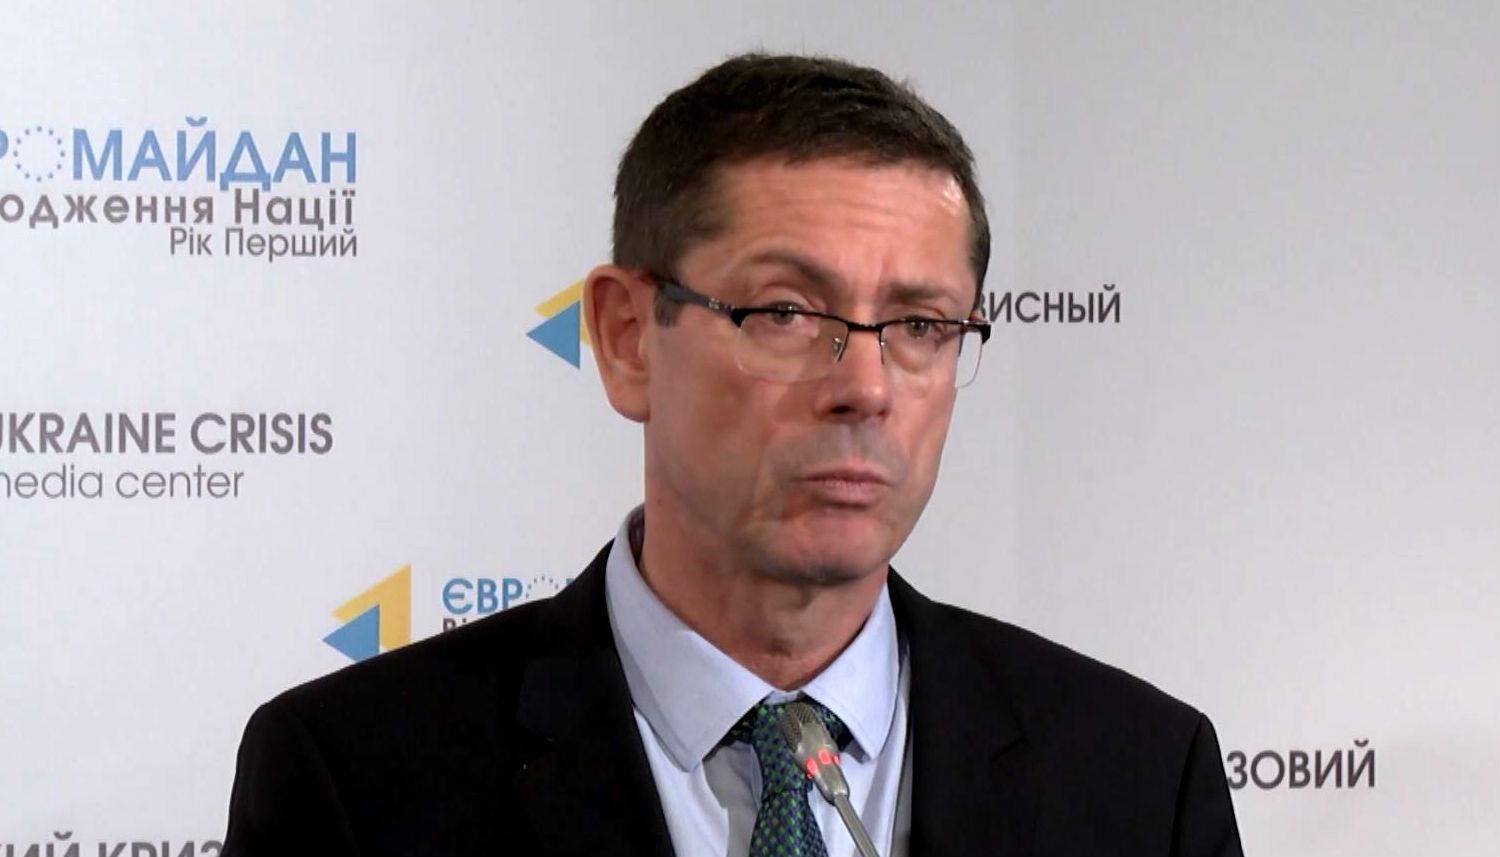 ООН настаивает на срочном расследовании украинскими властями нарушений прав человека на Майдане